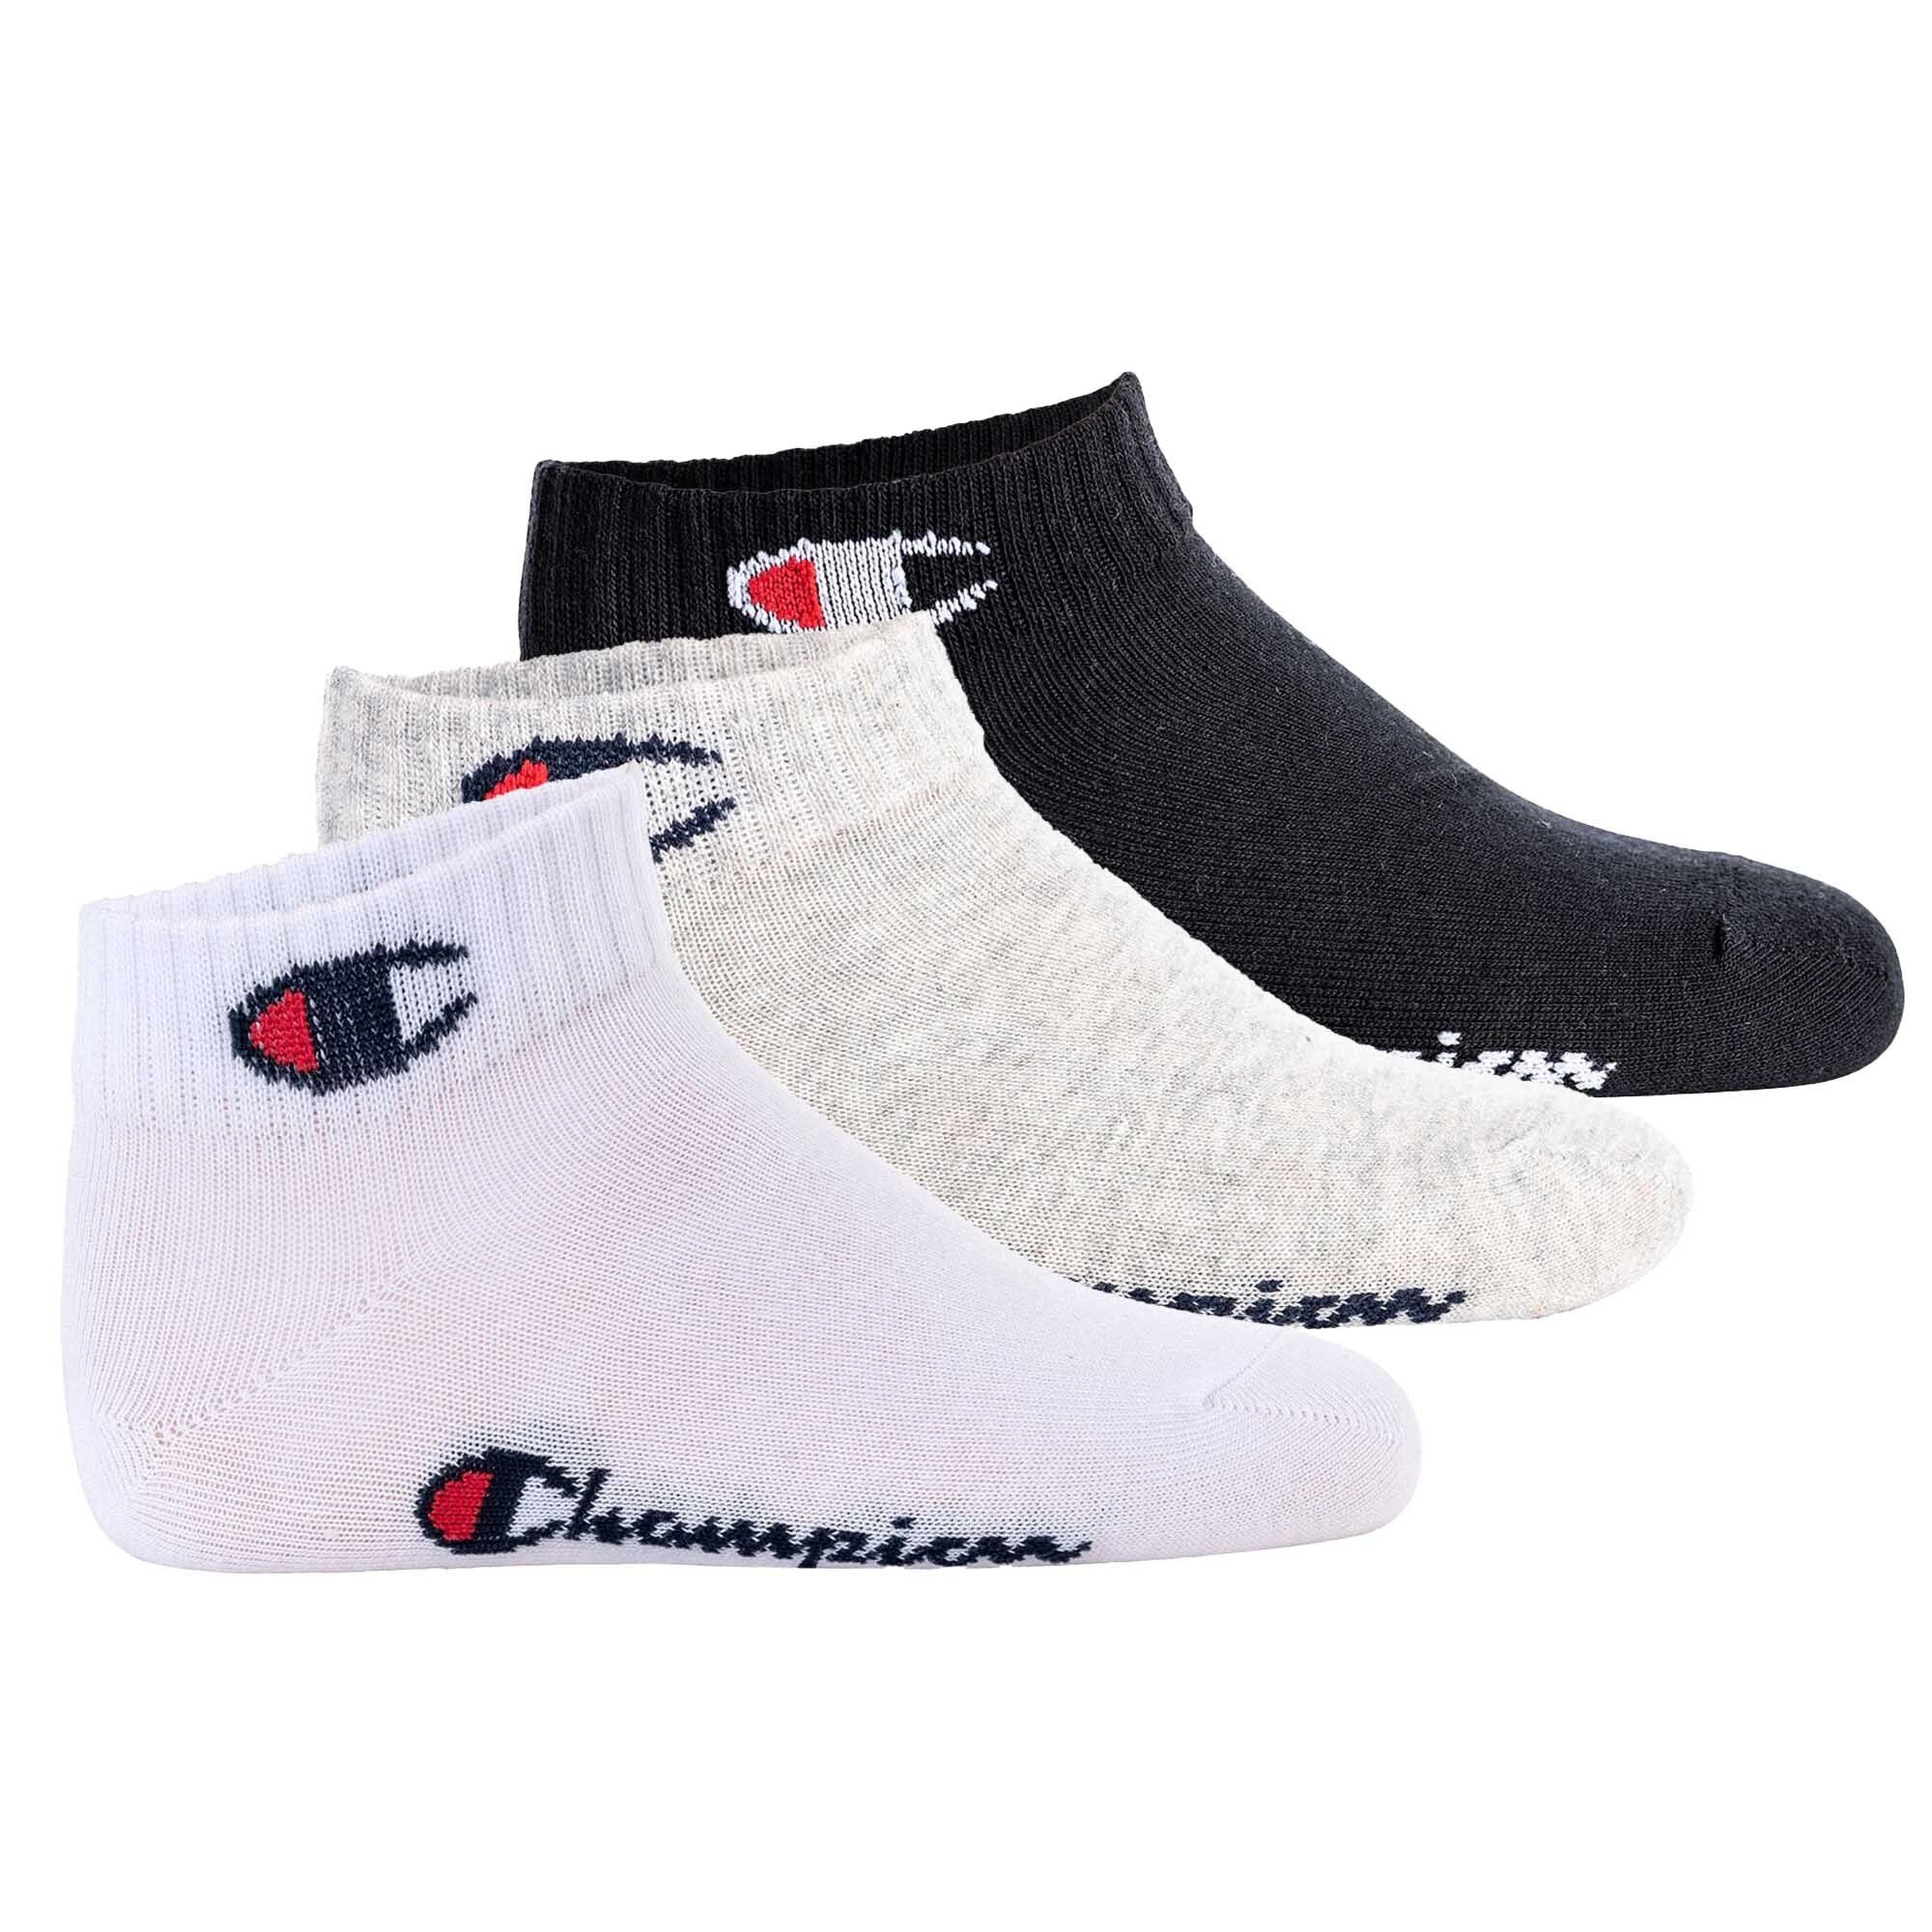 Champion Freizeitsocken Kinder Socken, 3er Pack - Quarter, Logo, einfarbig Schwarz/Grau/Weiß